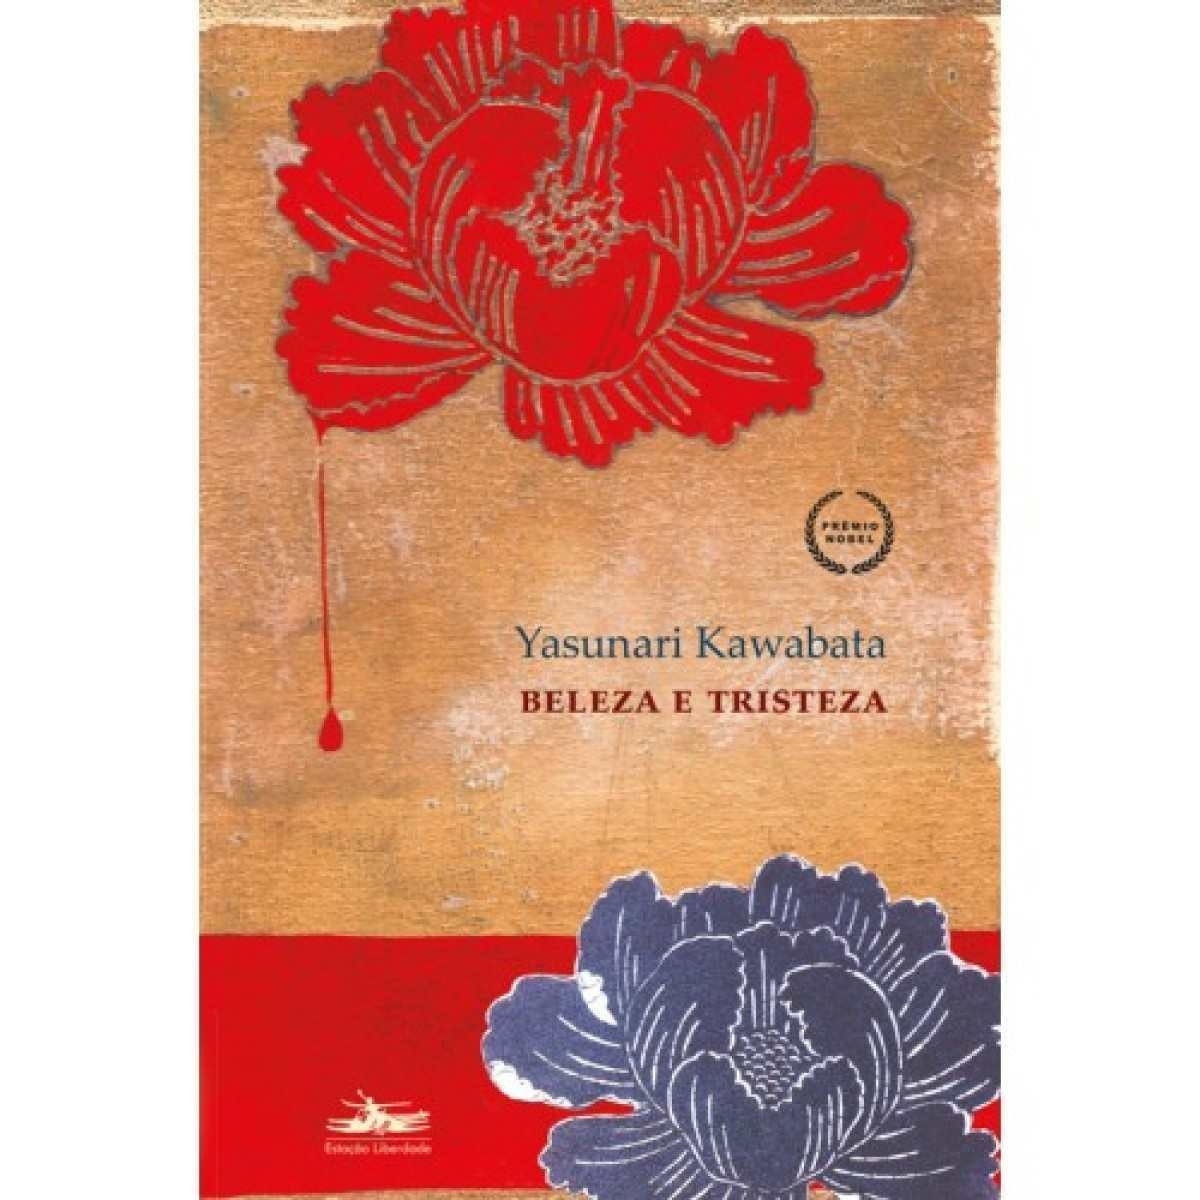 Livro Beleza e tristeza, de Yasunari Kawabata